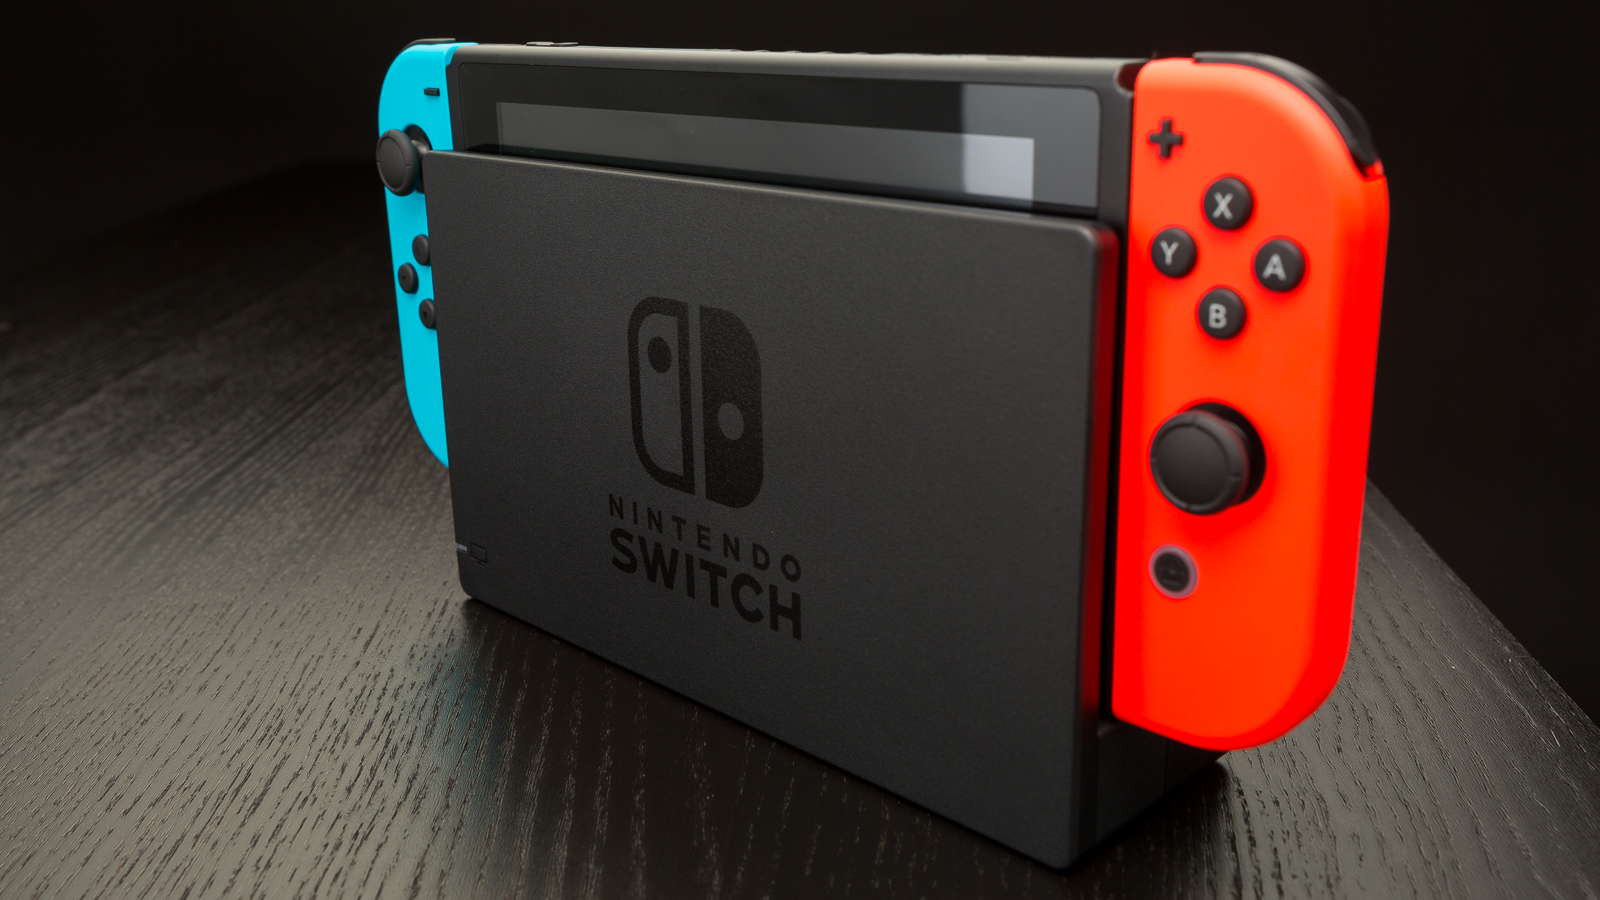 Nel 2018, la nuova console ibrida di casa Nintendo è riuscita a superare le vendite avvantaggiandosi sulle console rivali (quali Playstation 4 e Xbox One).